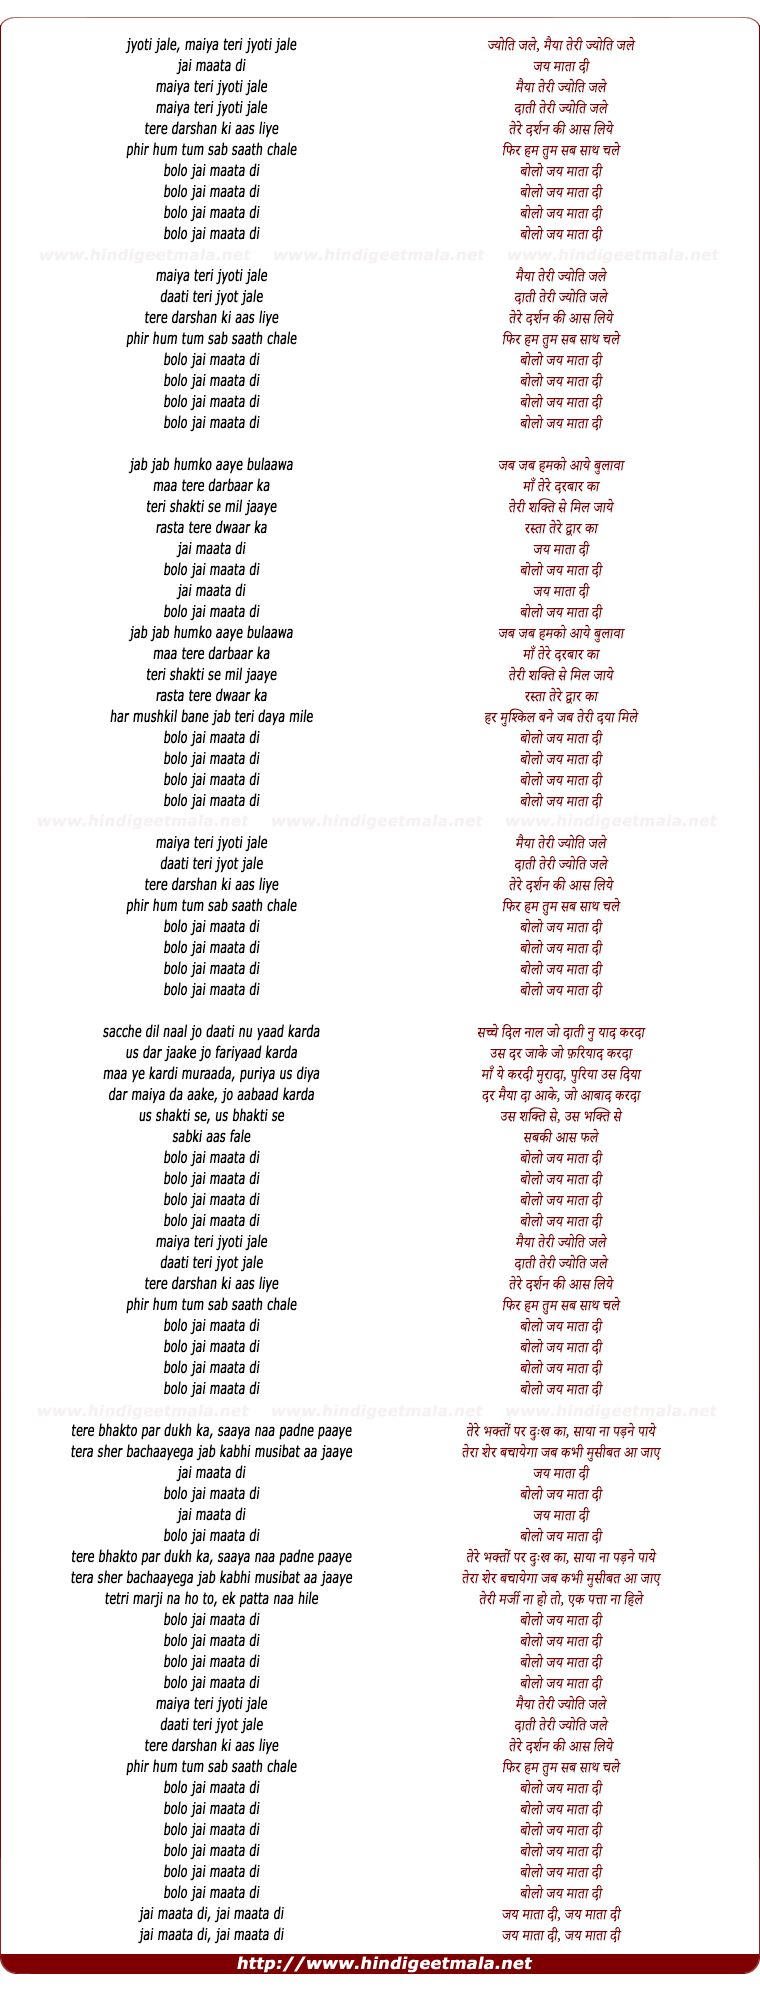 lyrics of song Maiya Teri Jyot Jale